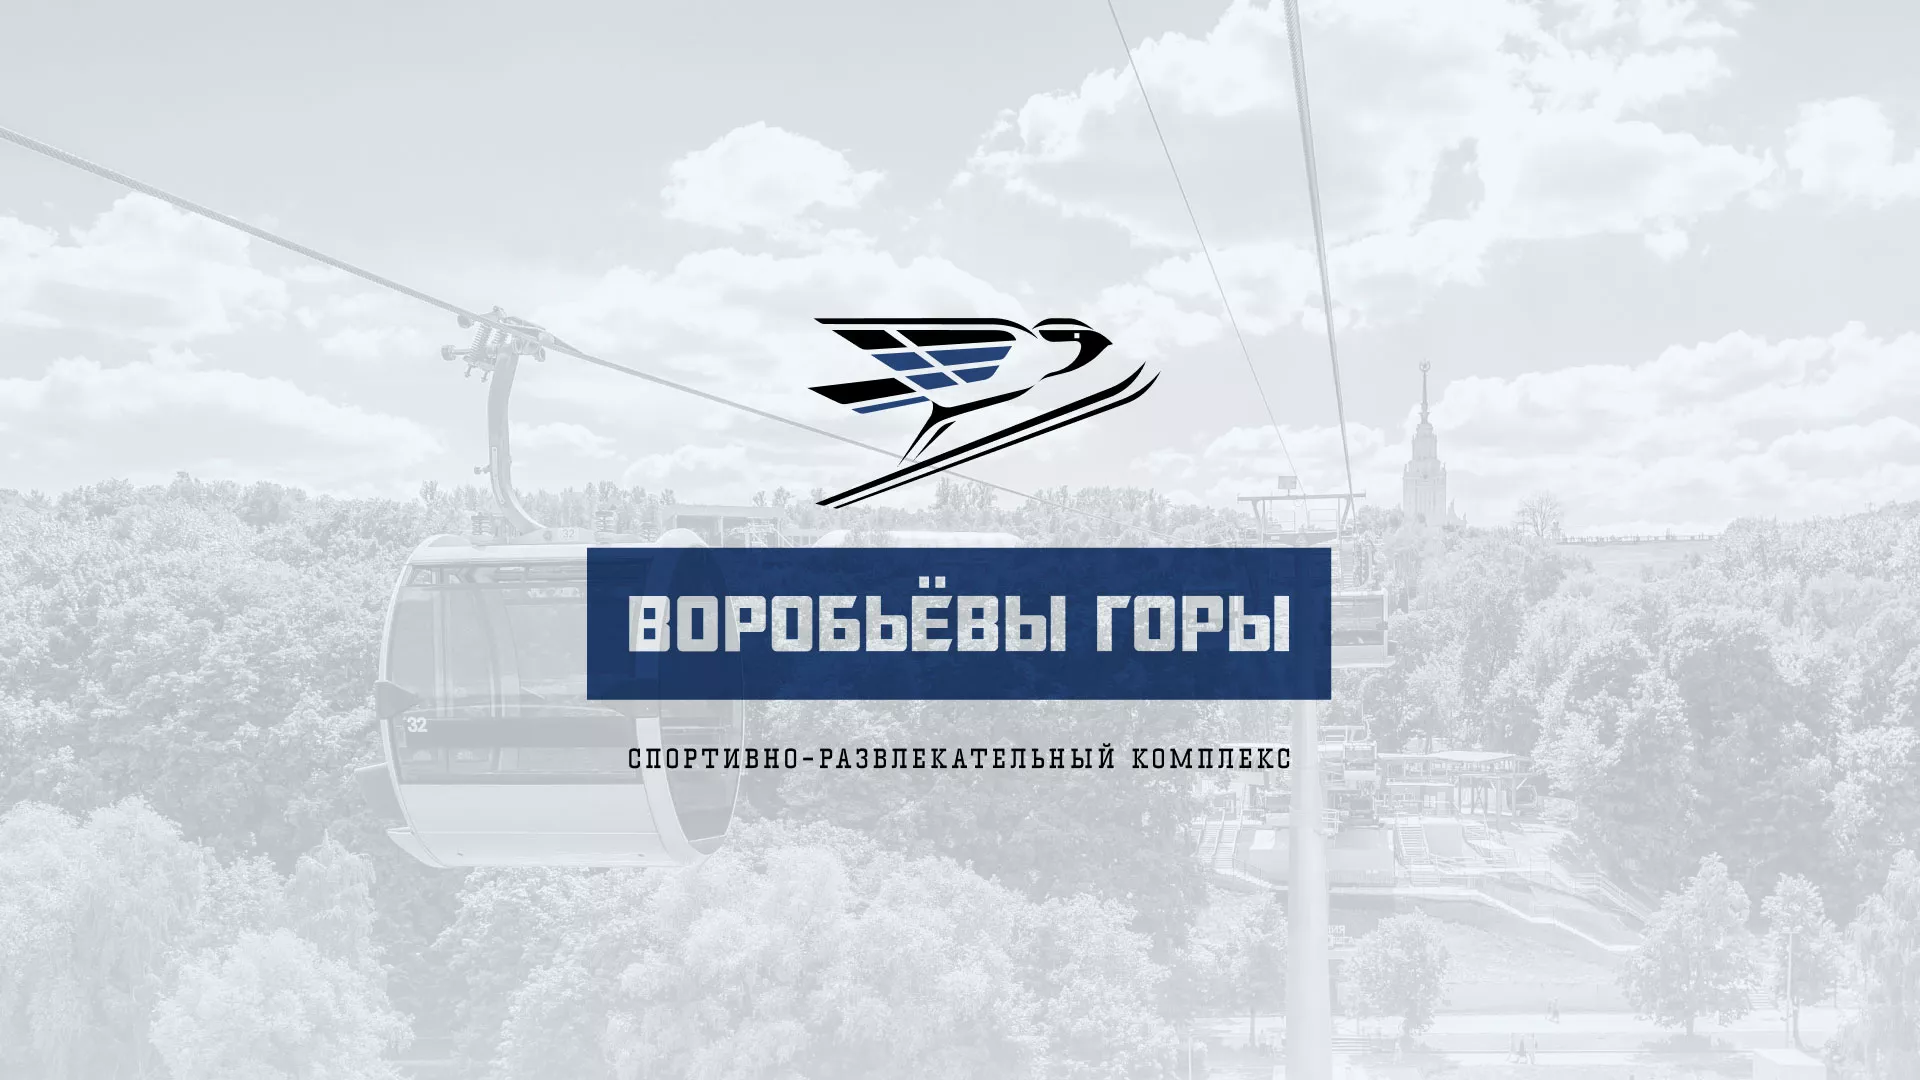 Разработка сайта в Задонске для спортивно-развлекательного комплекса «Воробьёвы горы»